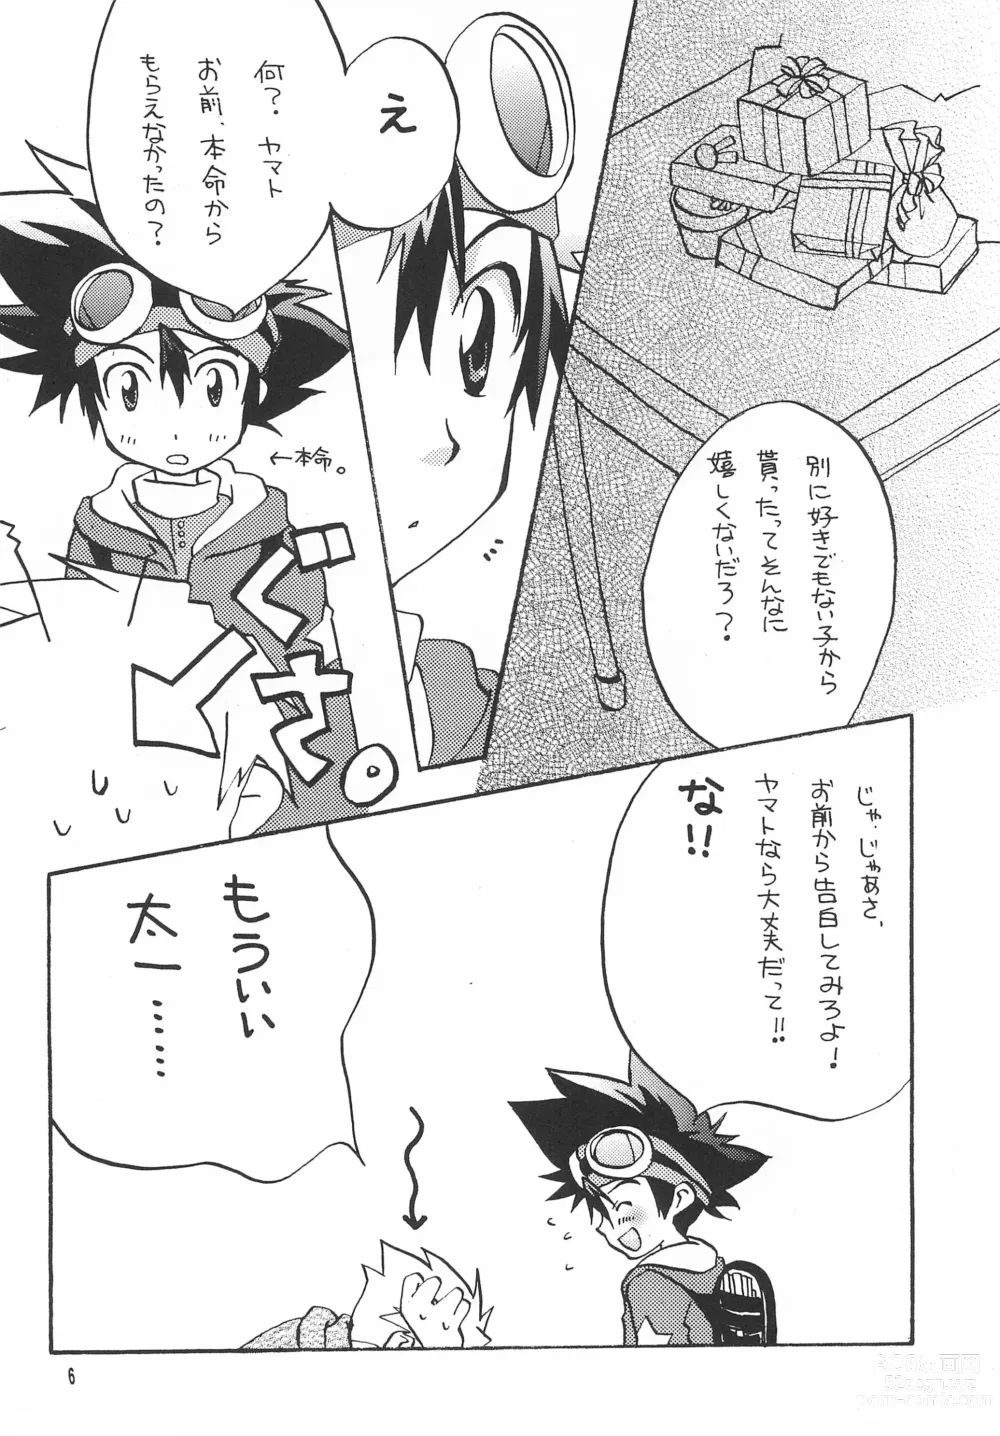 Page 8 of doujinshi Utsukushiki Samazama no Yume